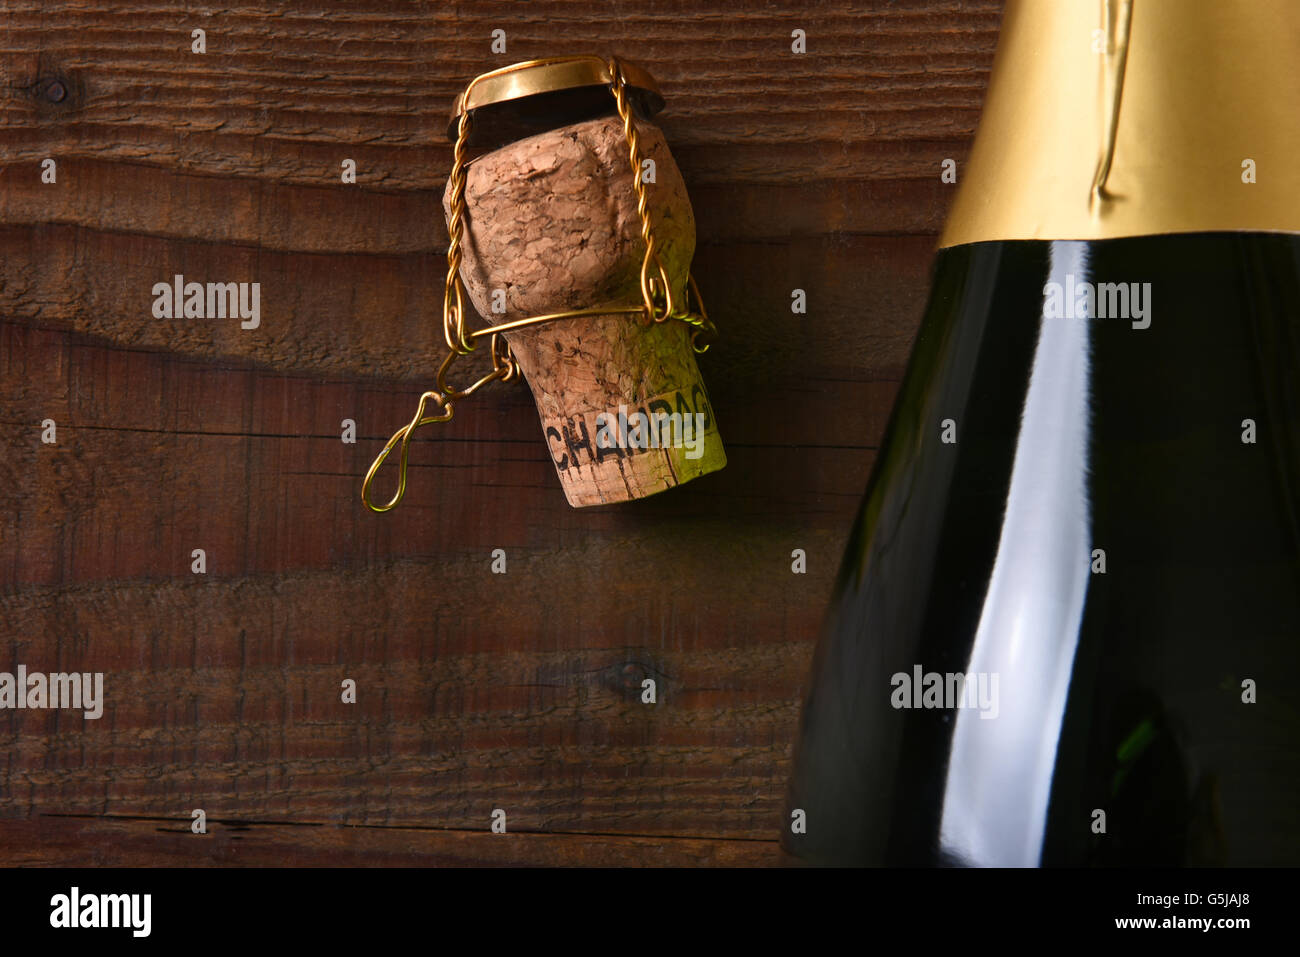 Draufsicht auf eine Flasche Champagner neben dem Kork und Käfig. Querformat auf einem dunklen Holz Hintergrund mit Textfreiraum. Stockfoto